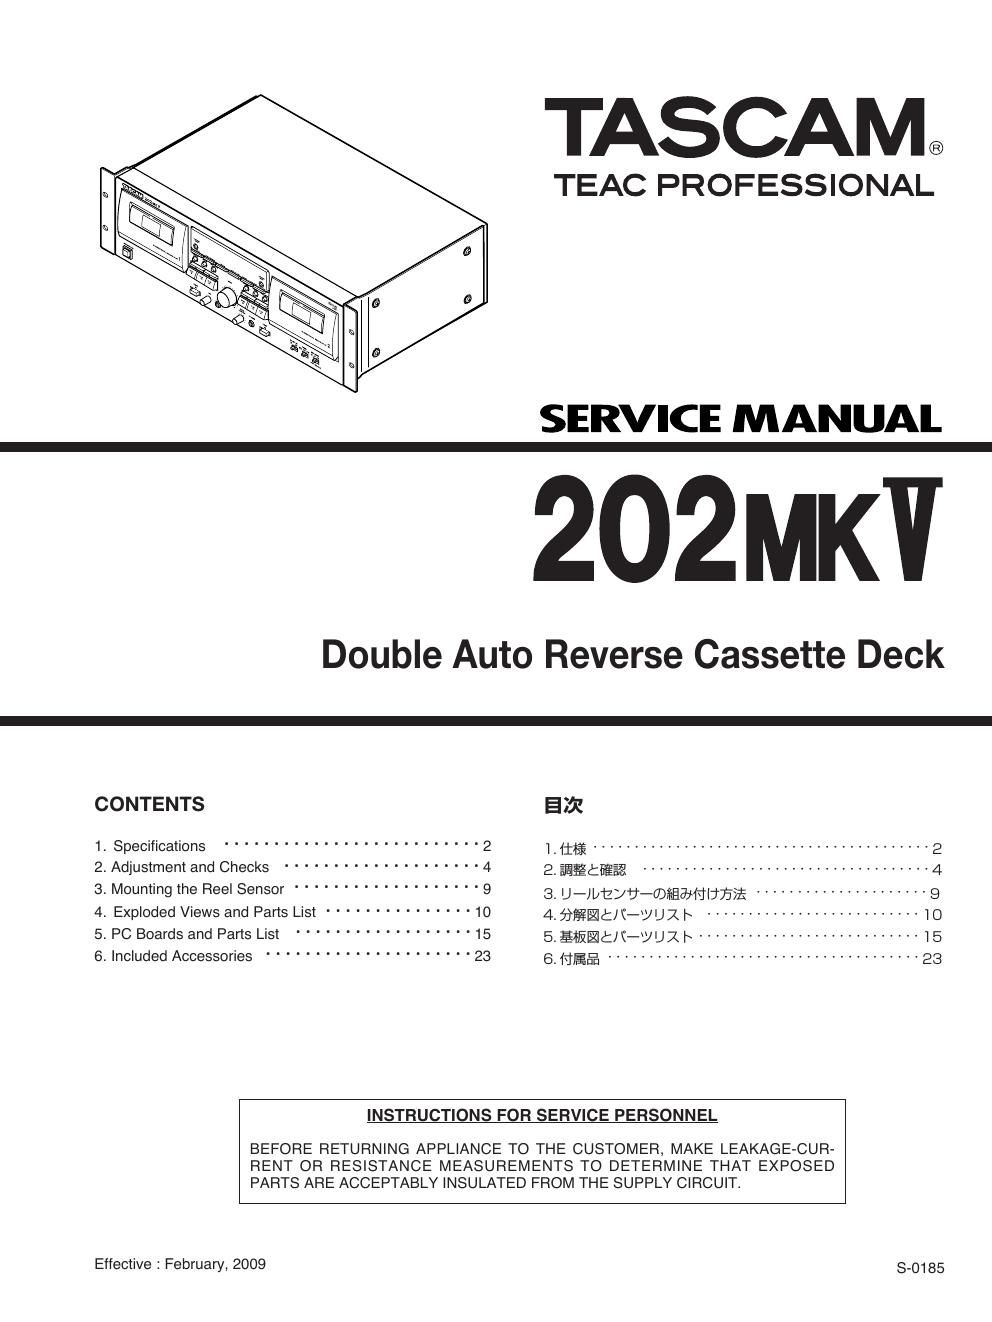 Tascam 202MKV Service Manual